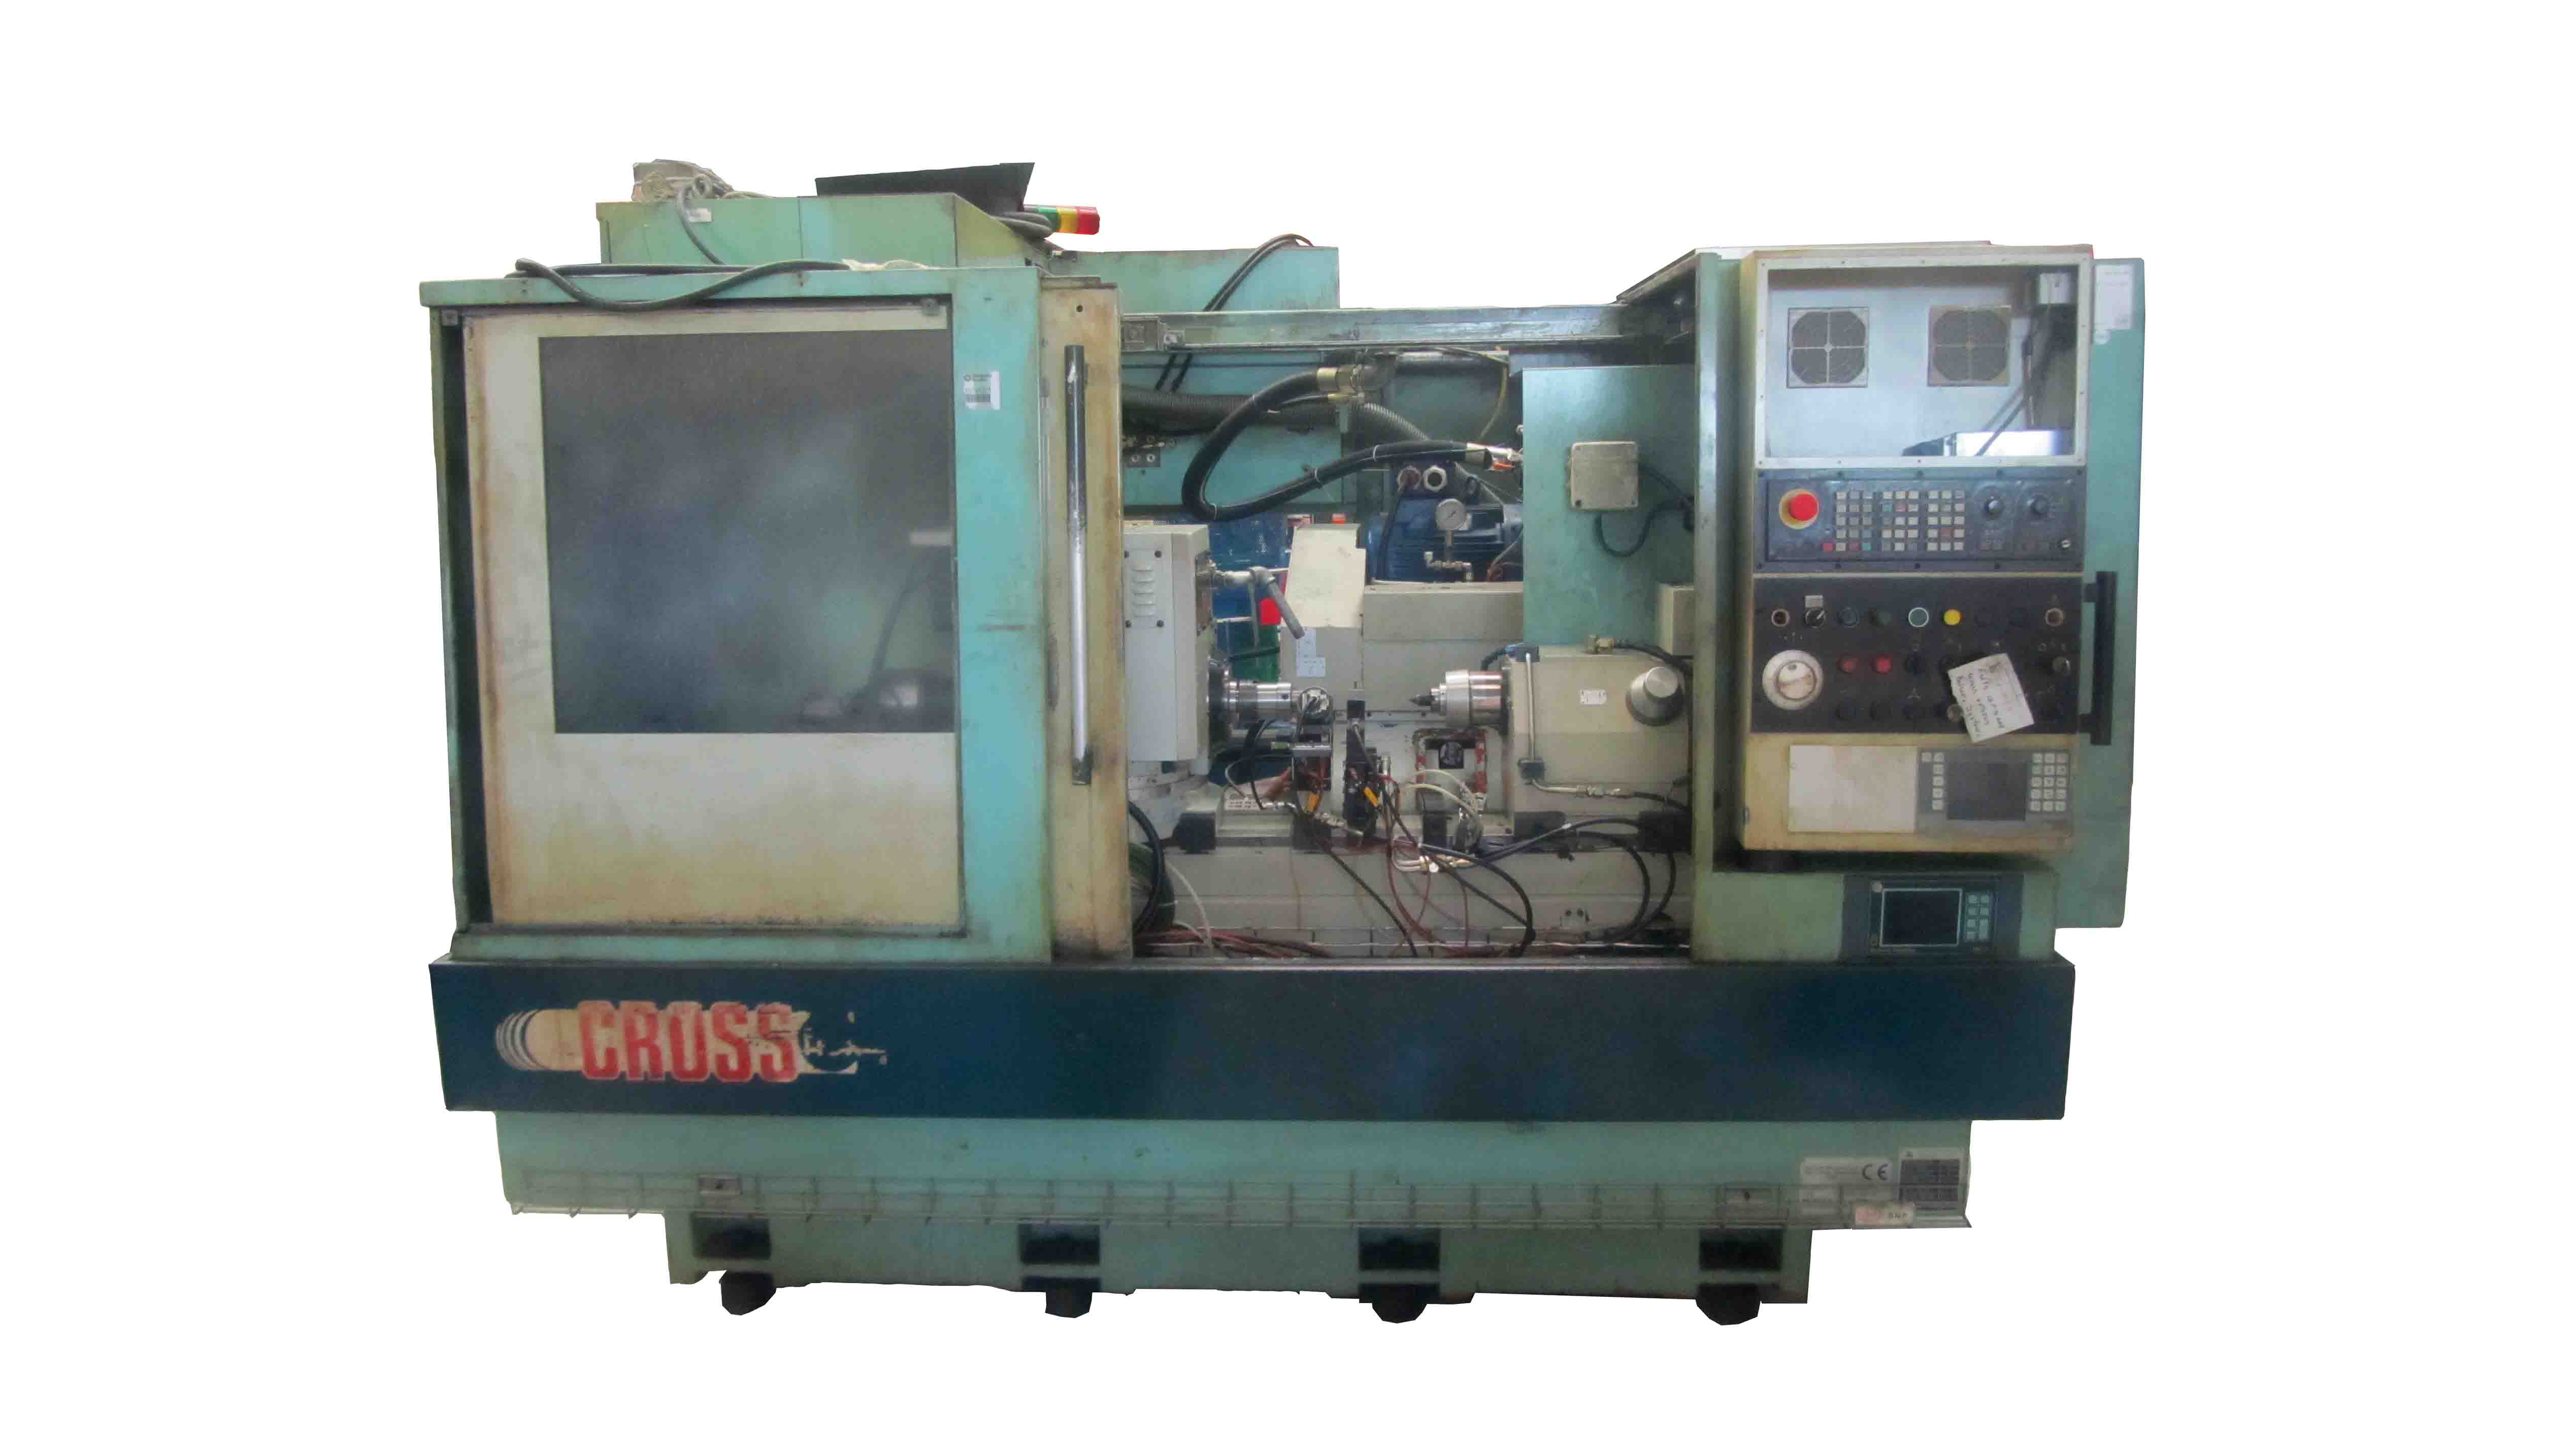  Tachella grinding machine, CROSSFLEX A160